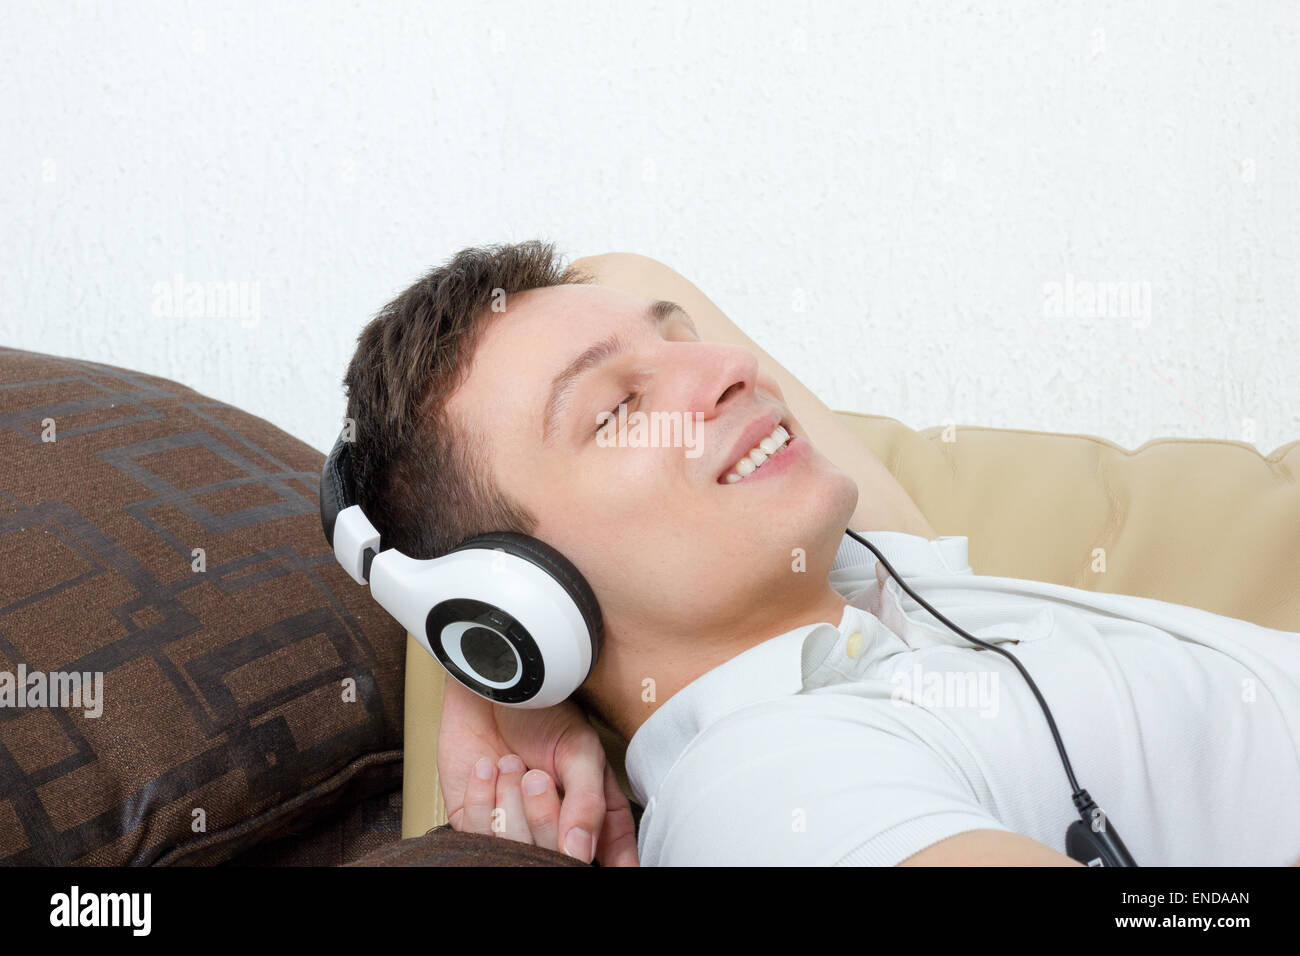 Beau jeune garçon dans un casque d'écoute de la musique avec magnétophone  isolé sur fond vert Photo Stock - Alamy